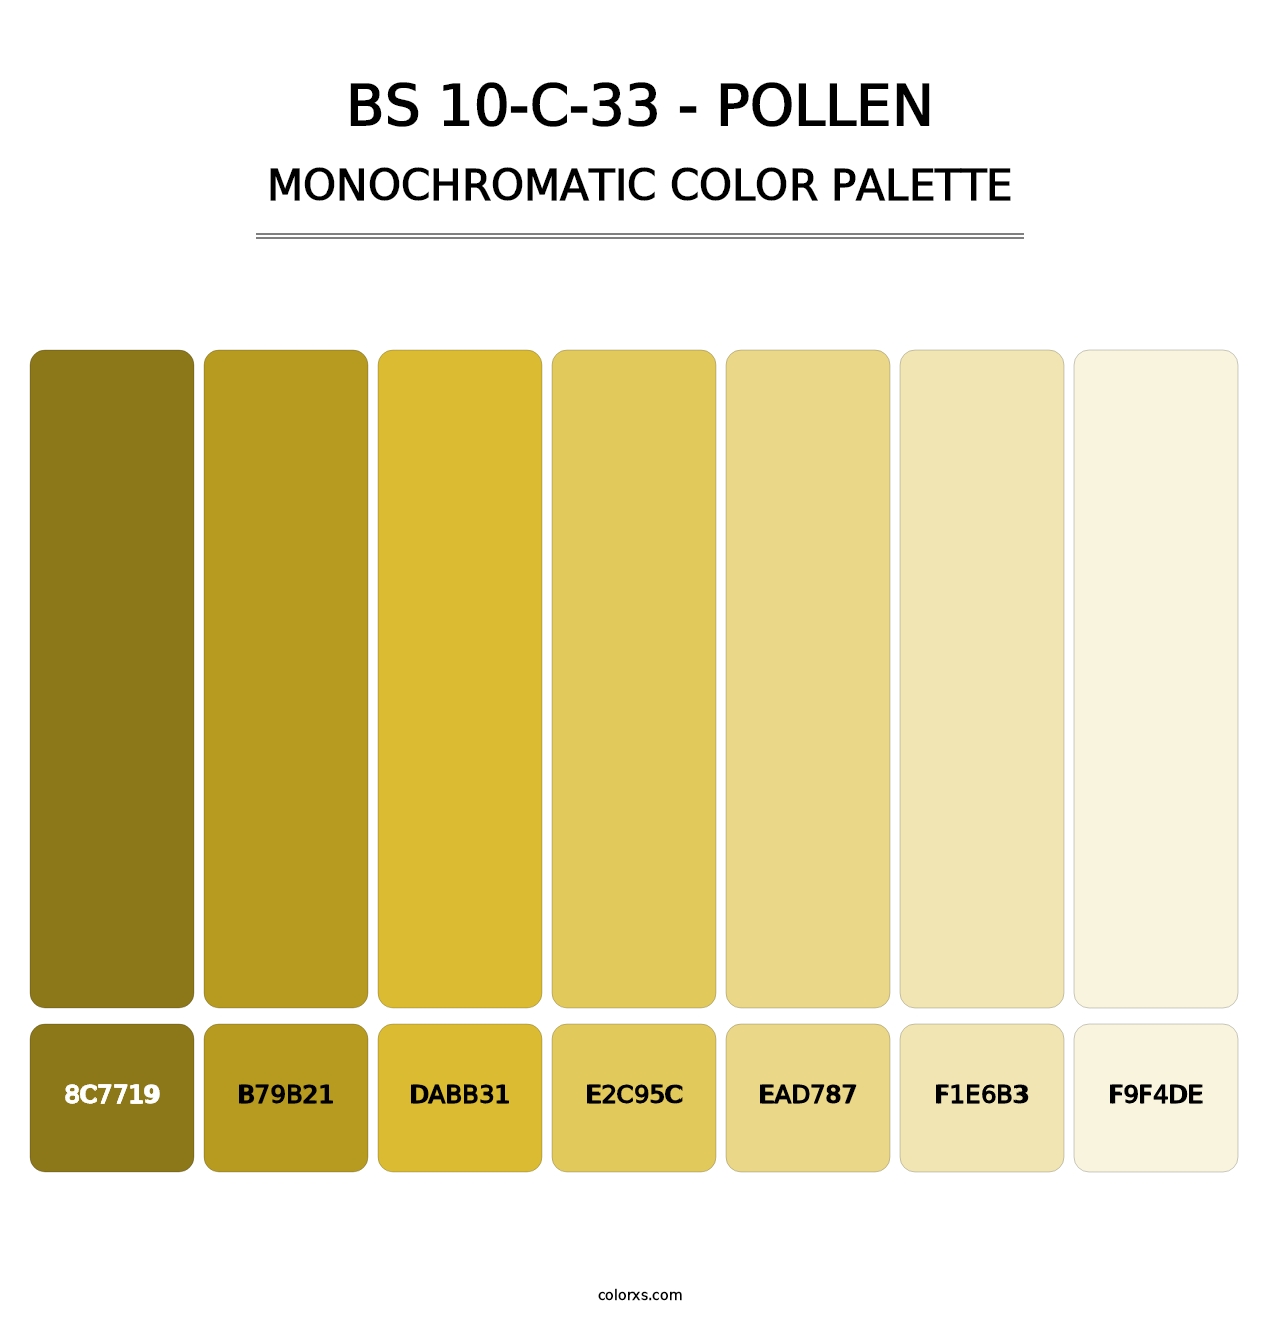 BS 10-C-33 - Pollen - Monochromatic Color Palette